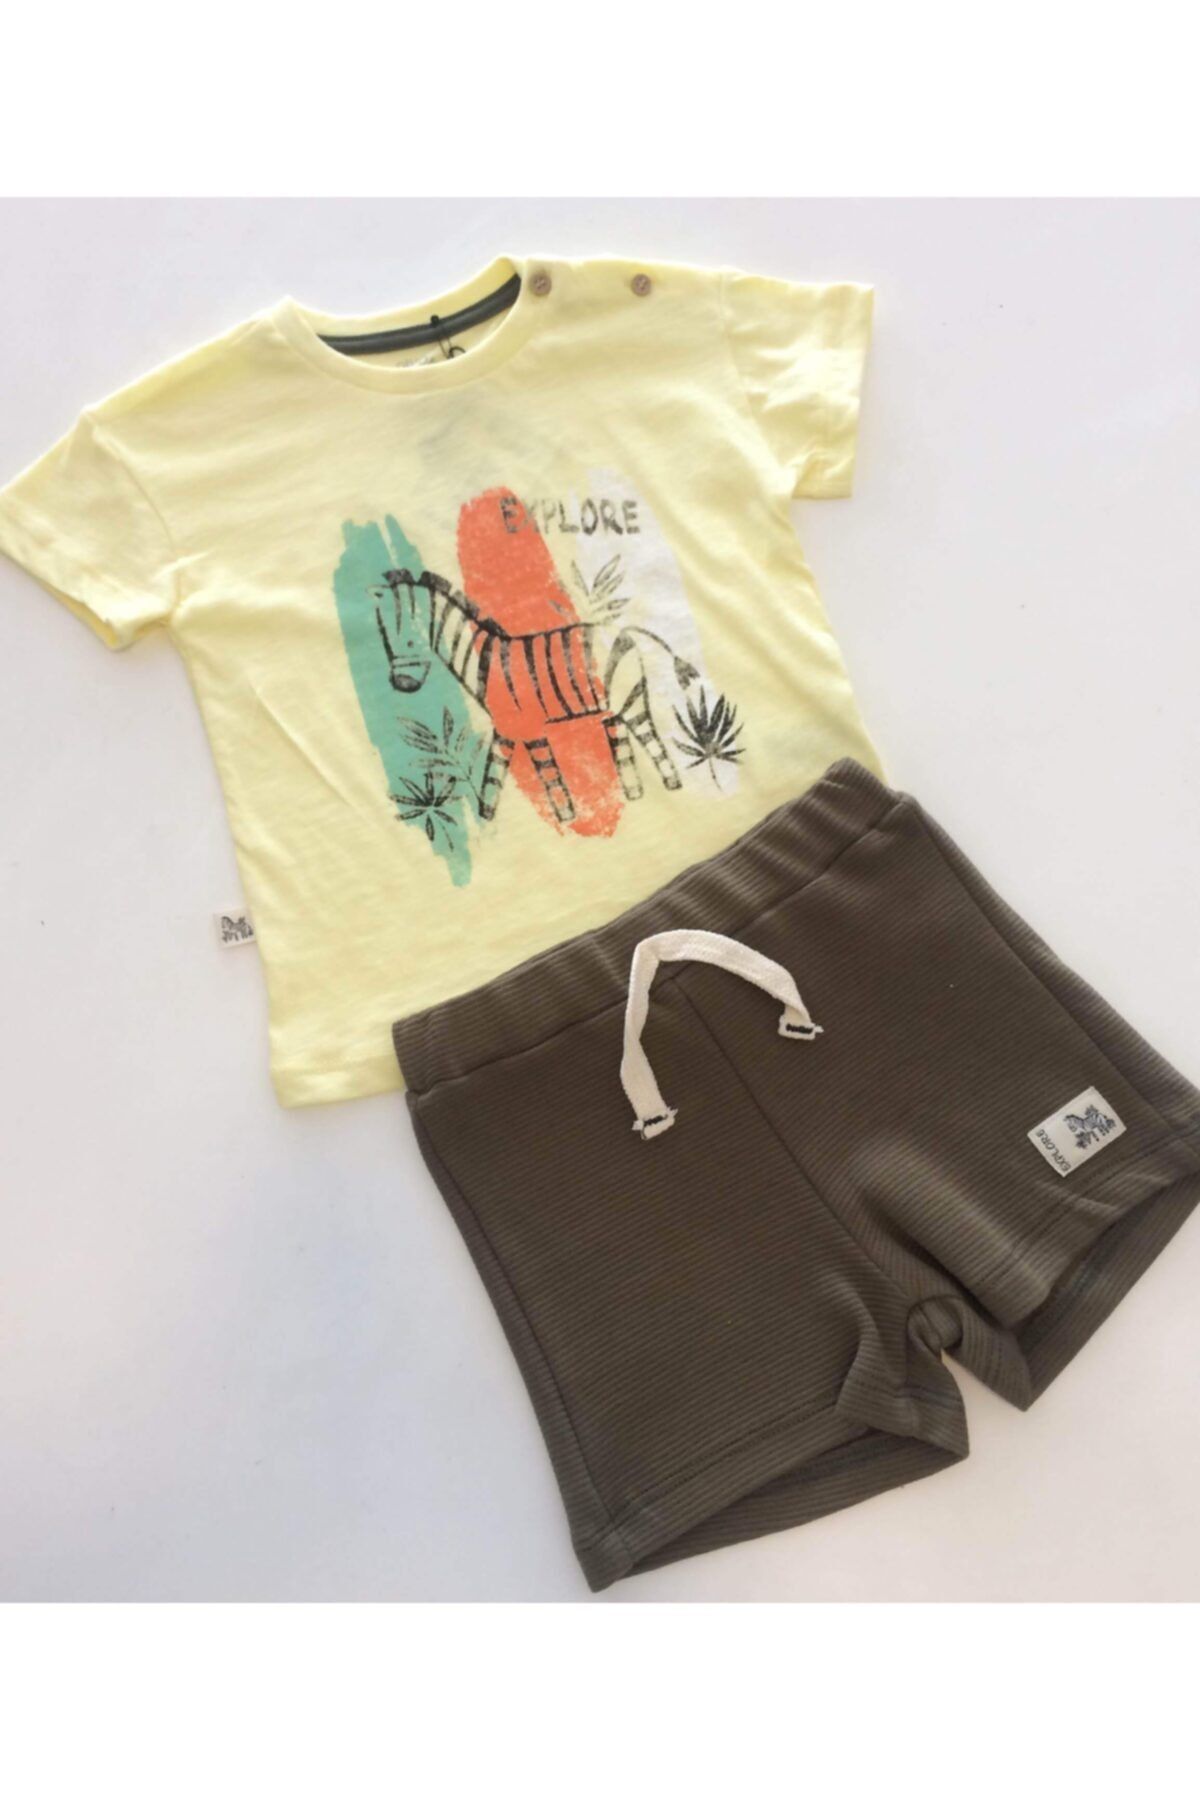 Divonette Zebra Desenli T-shirt ve Şort Takım